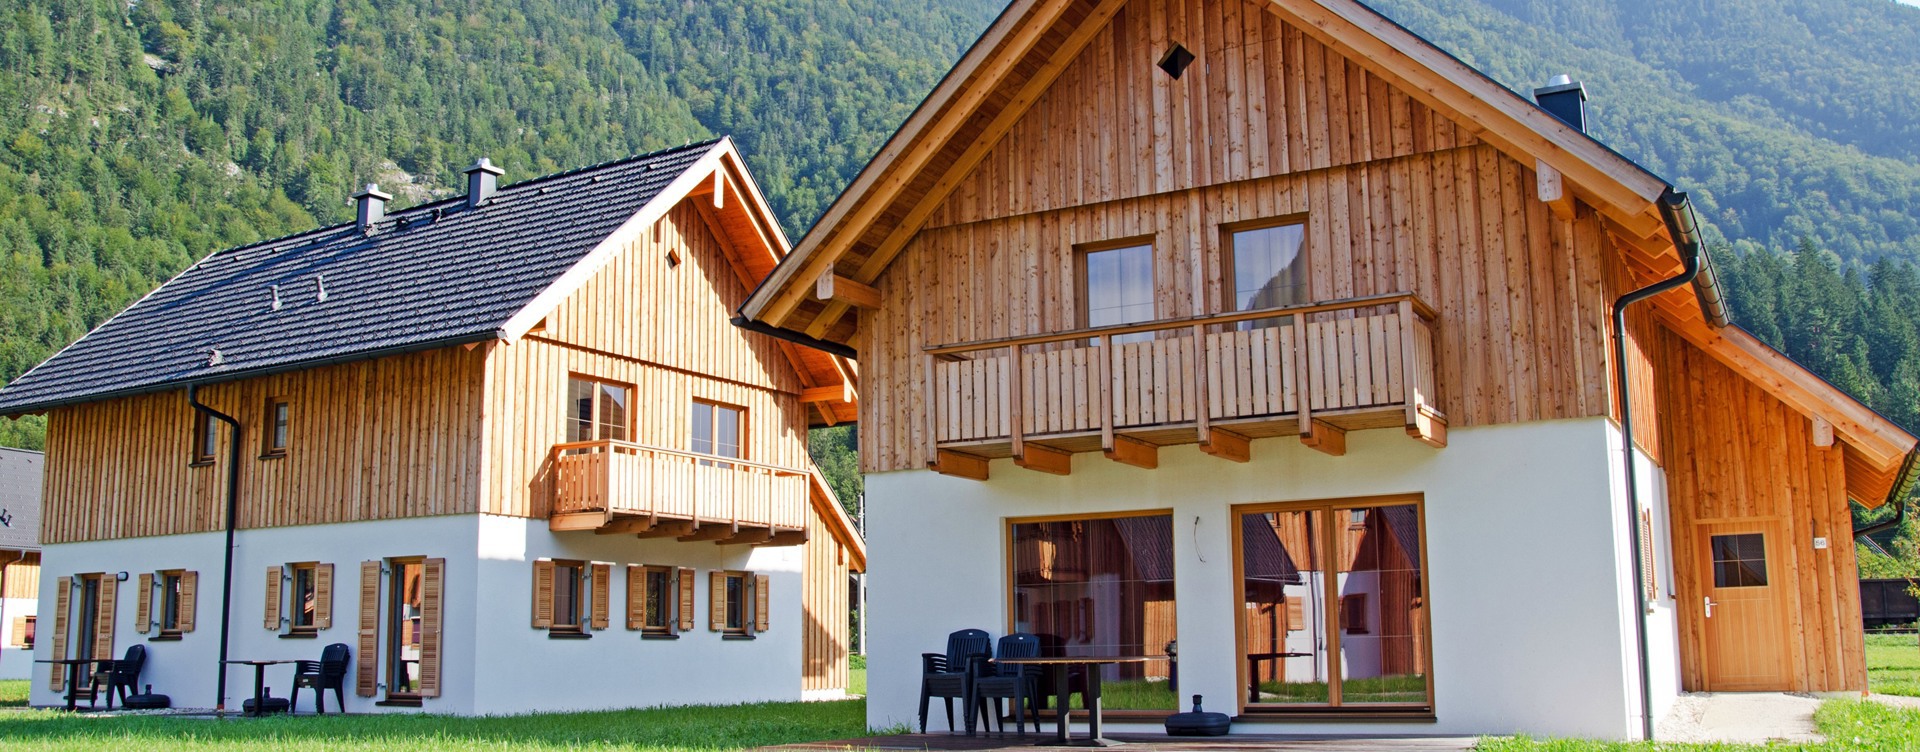 Disfruta de una estancia en el lago Hallstatt,
situado en una región declarada Patrimonio Mundial